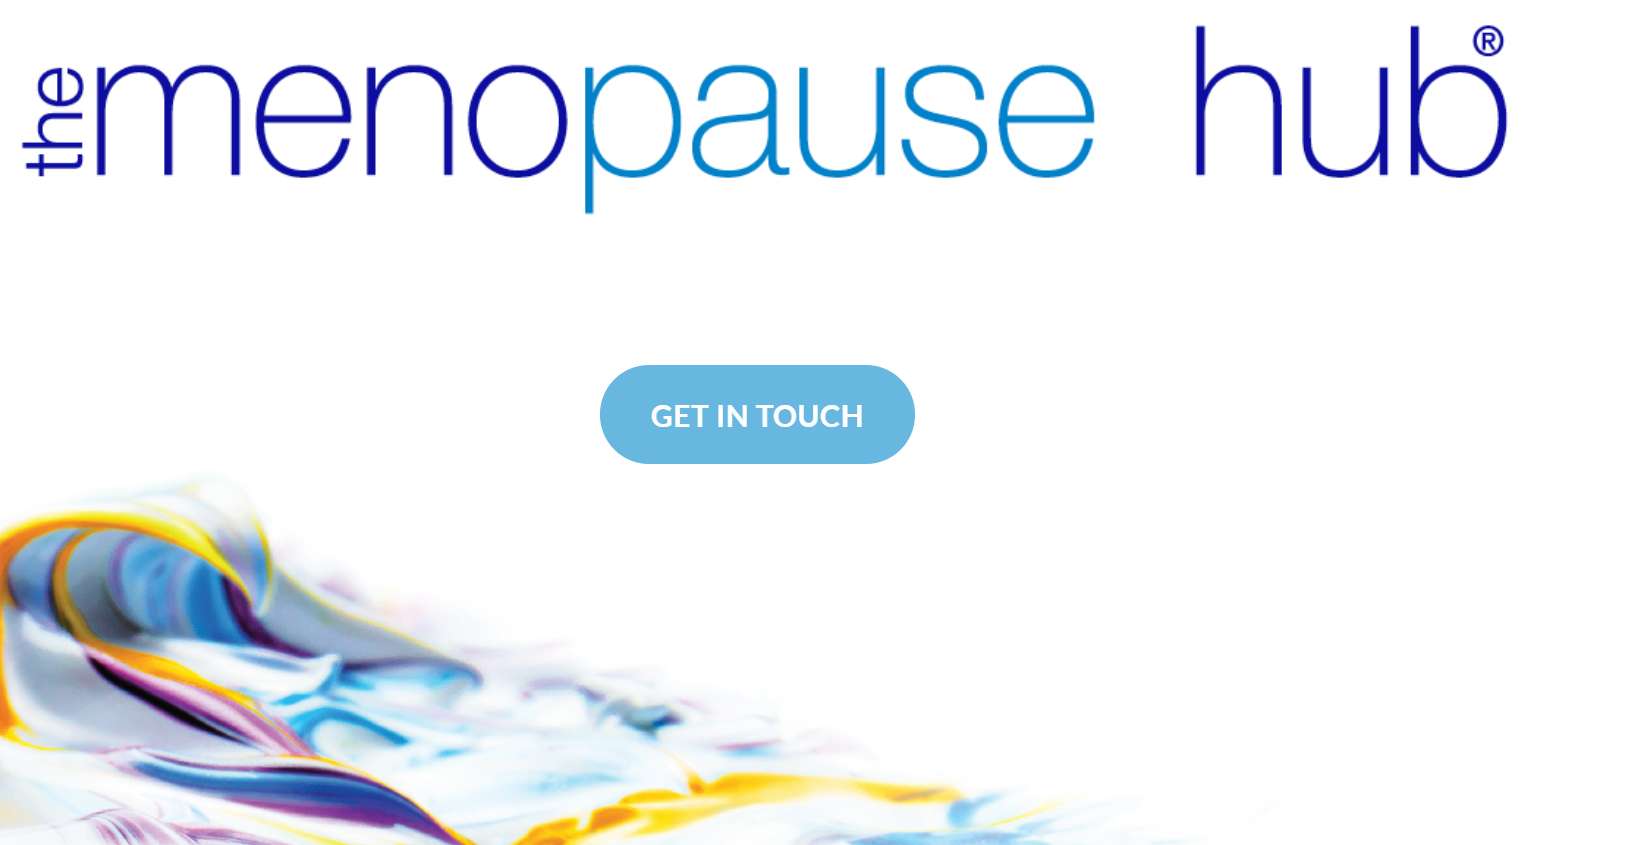 Menopause hub TLC pic